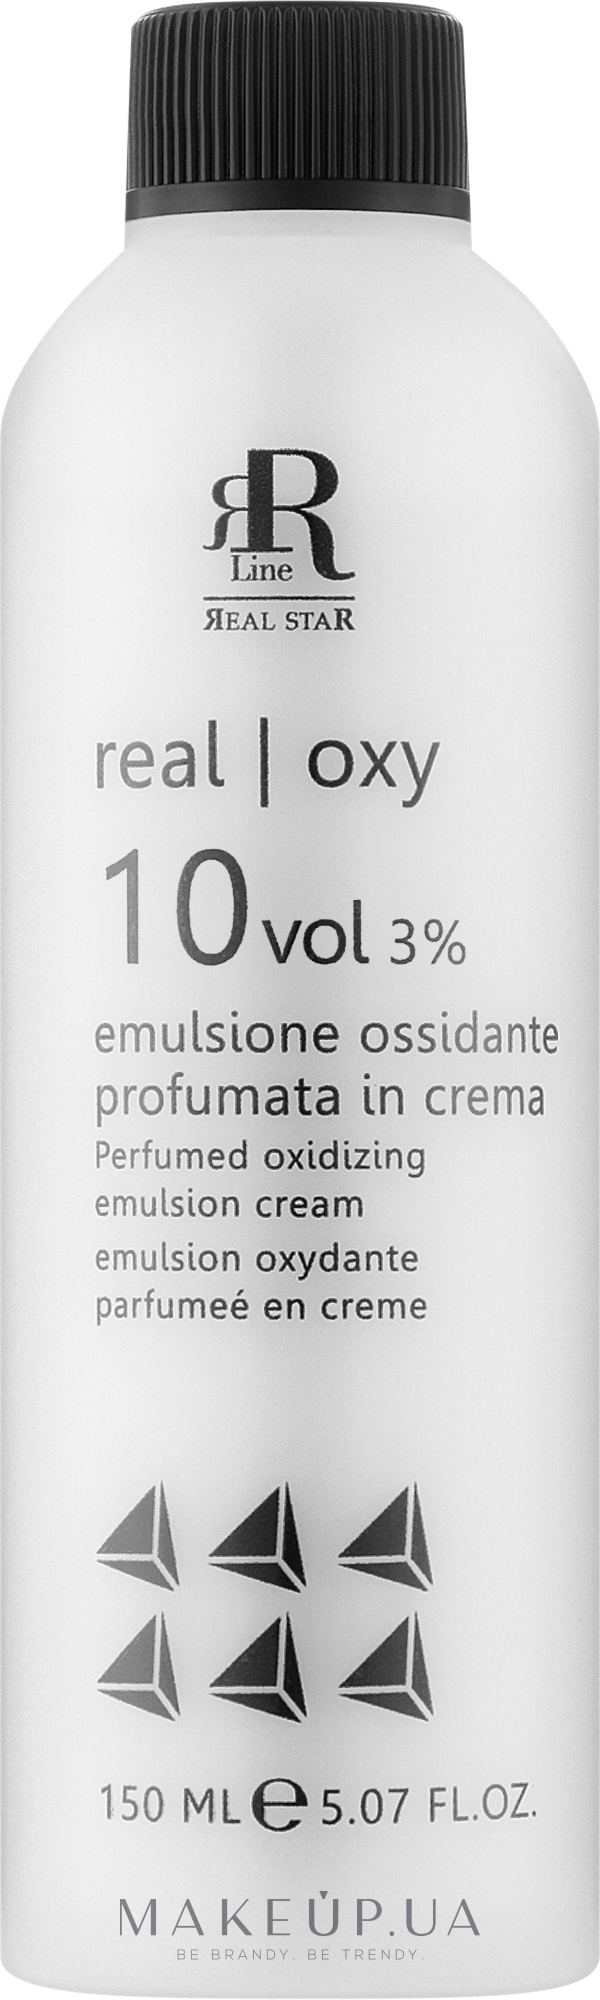 Парфюмированная окислительная эмульсия 3% - RR Line Parfymed Oxidizing Emulsion Cream — фото 150ml